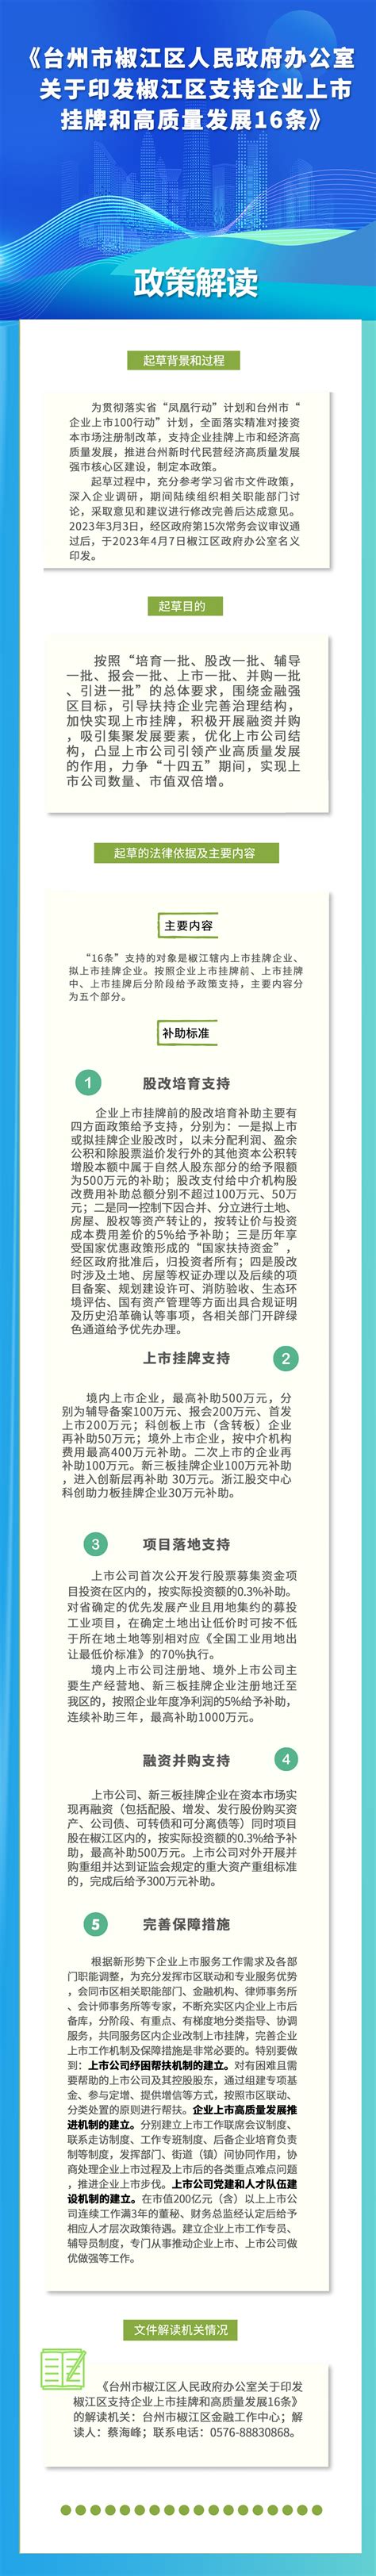 关于《台州市椒江区人民政府办公室关于印发椒江区支持企业上市挂牌和高质量发展16条》的政策图解